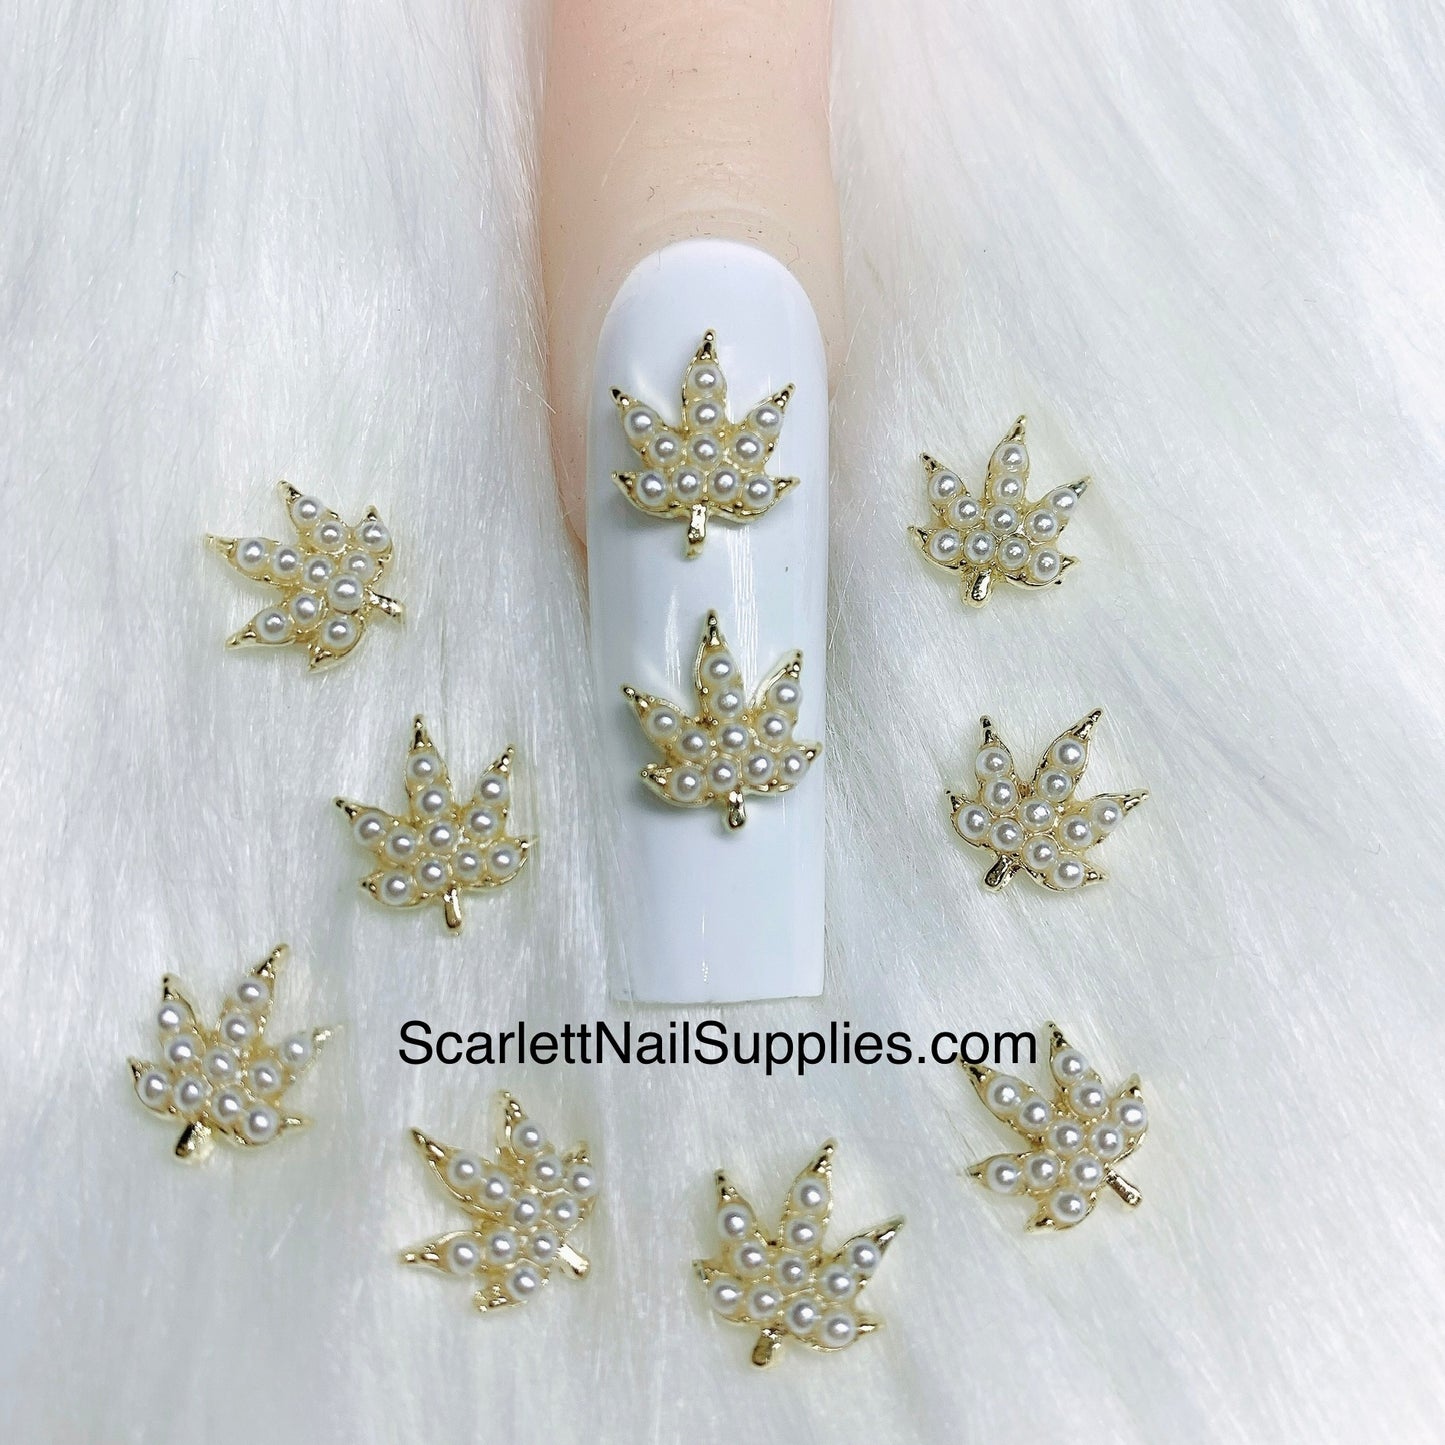 4pcs 3D Pearl Gold Charm Leaf Shape Nail Art Decorations